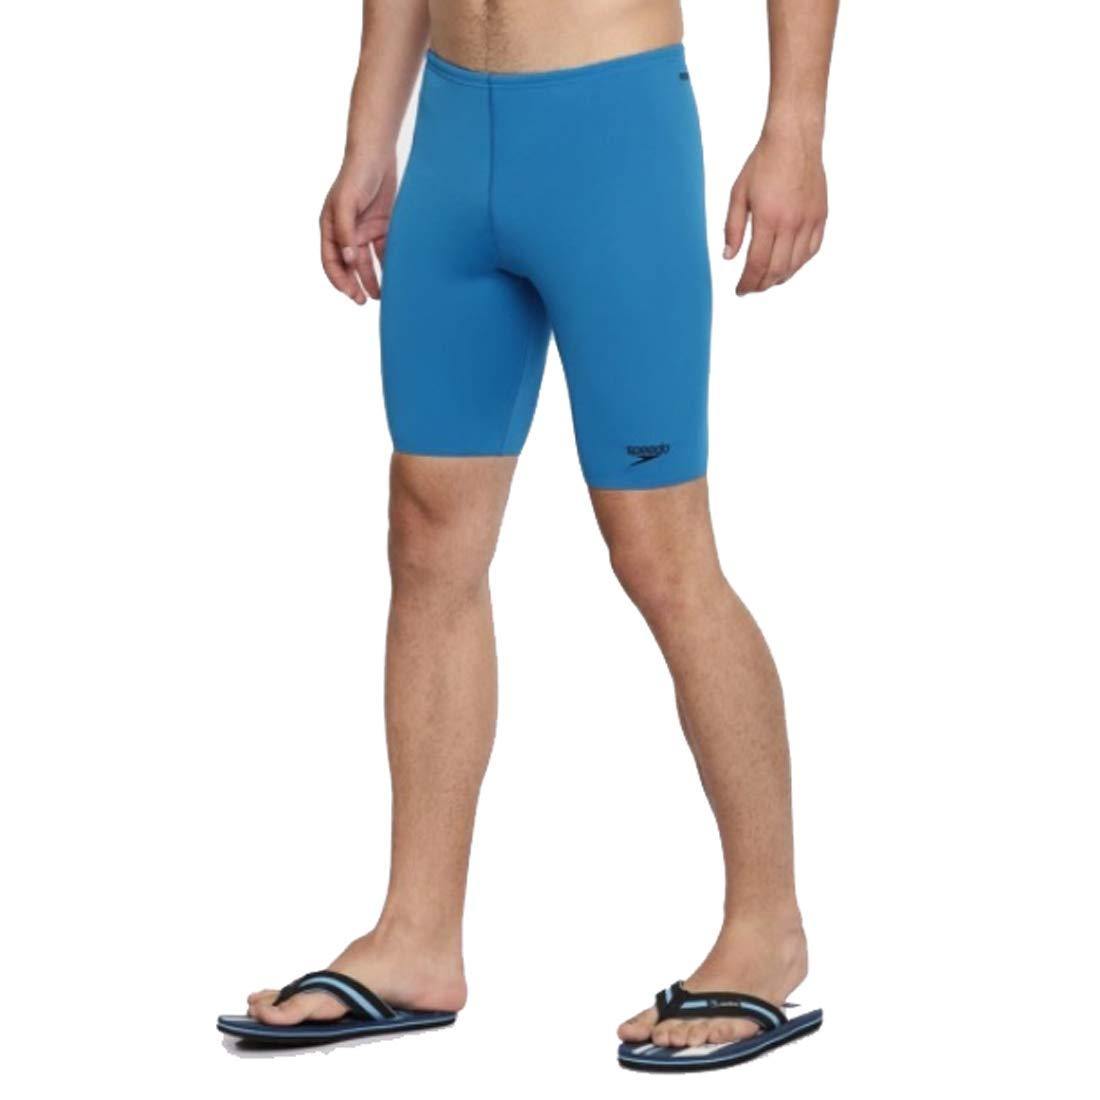 Speedo Essential Endurance+ Men's Swimming Jammer Shorts - Best Price online Prokicksports.com